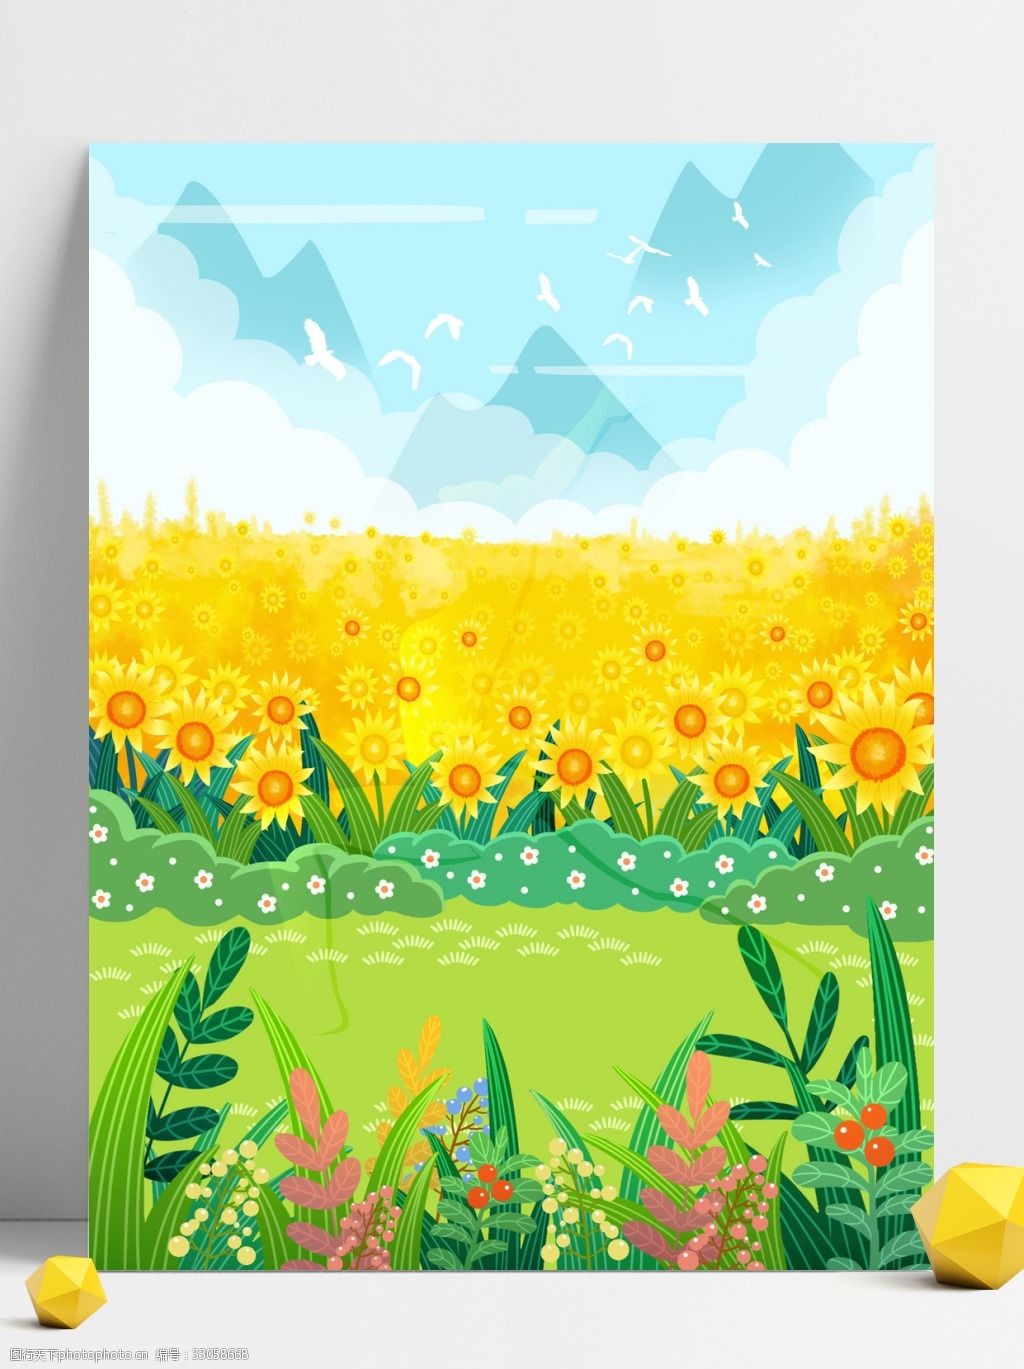 手绘背景 向日葵 植物 卡通 彩色 创意 装饰 背景 设计背景 海报背景